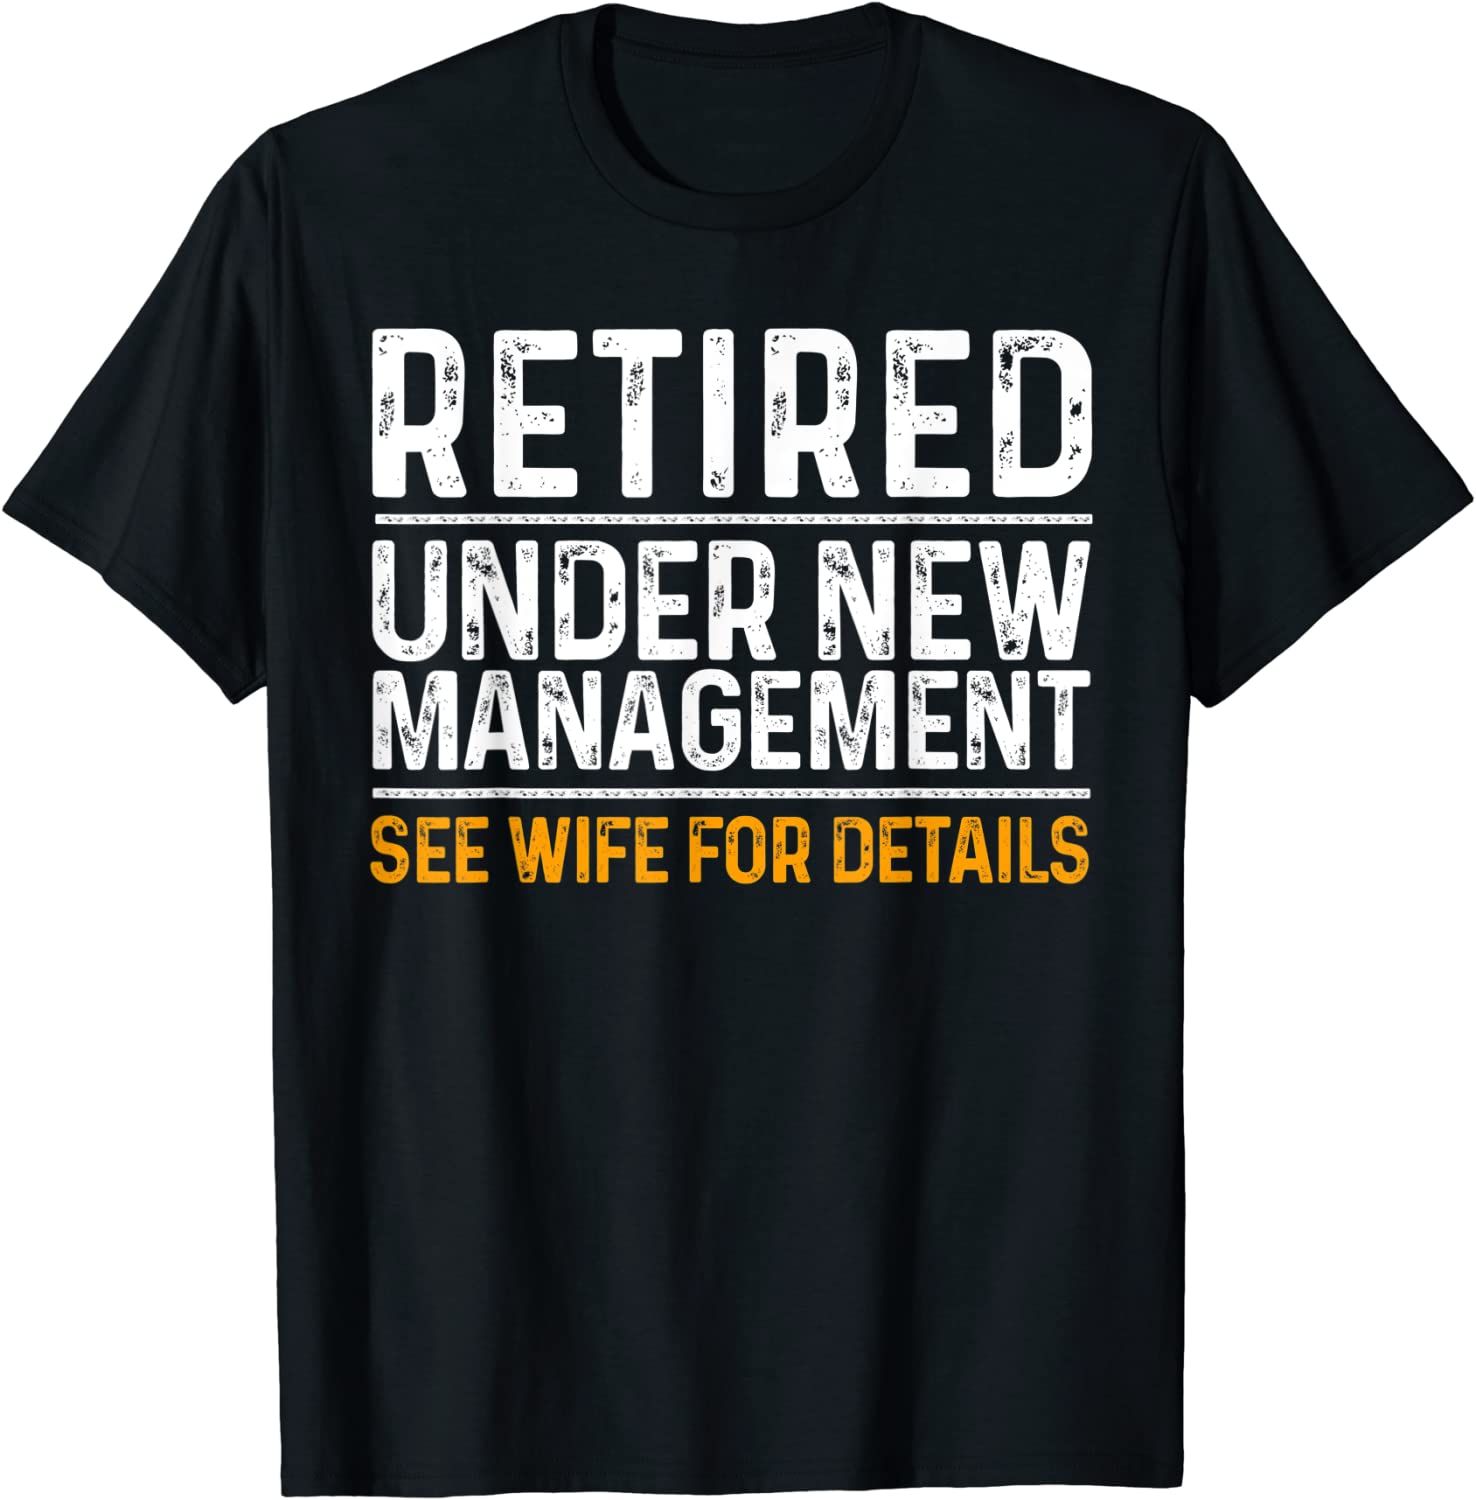 Funny Retirement Design T-shirt for Men
